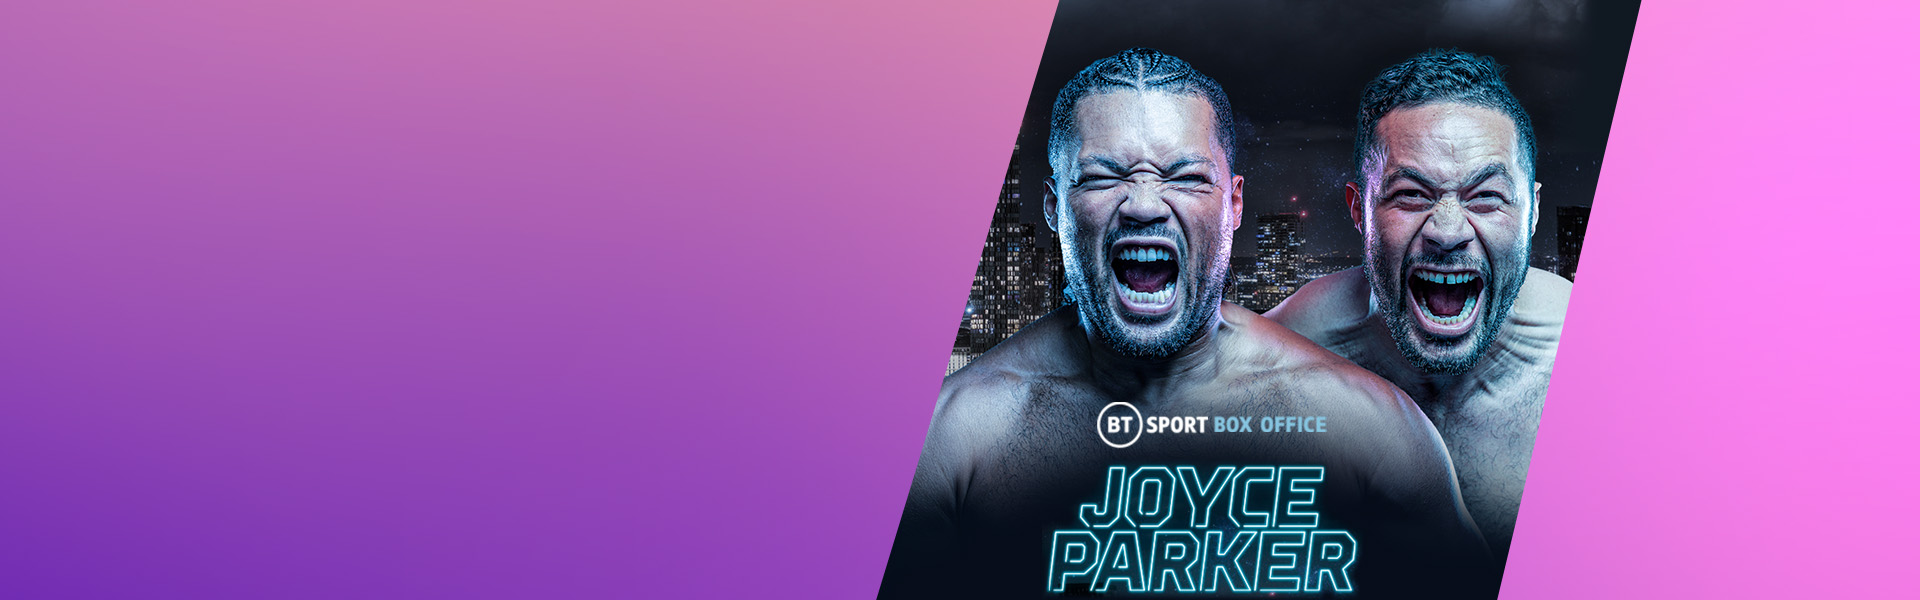 Watch Joe Joyce vs Joseph Parker on BT Sport Box Office